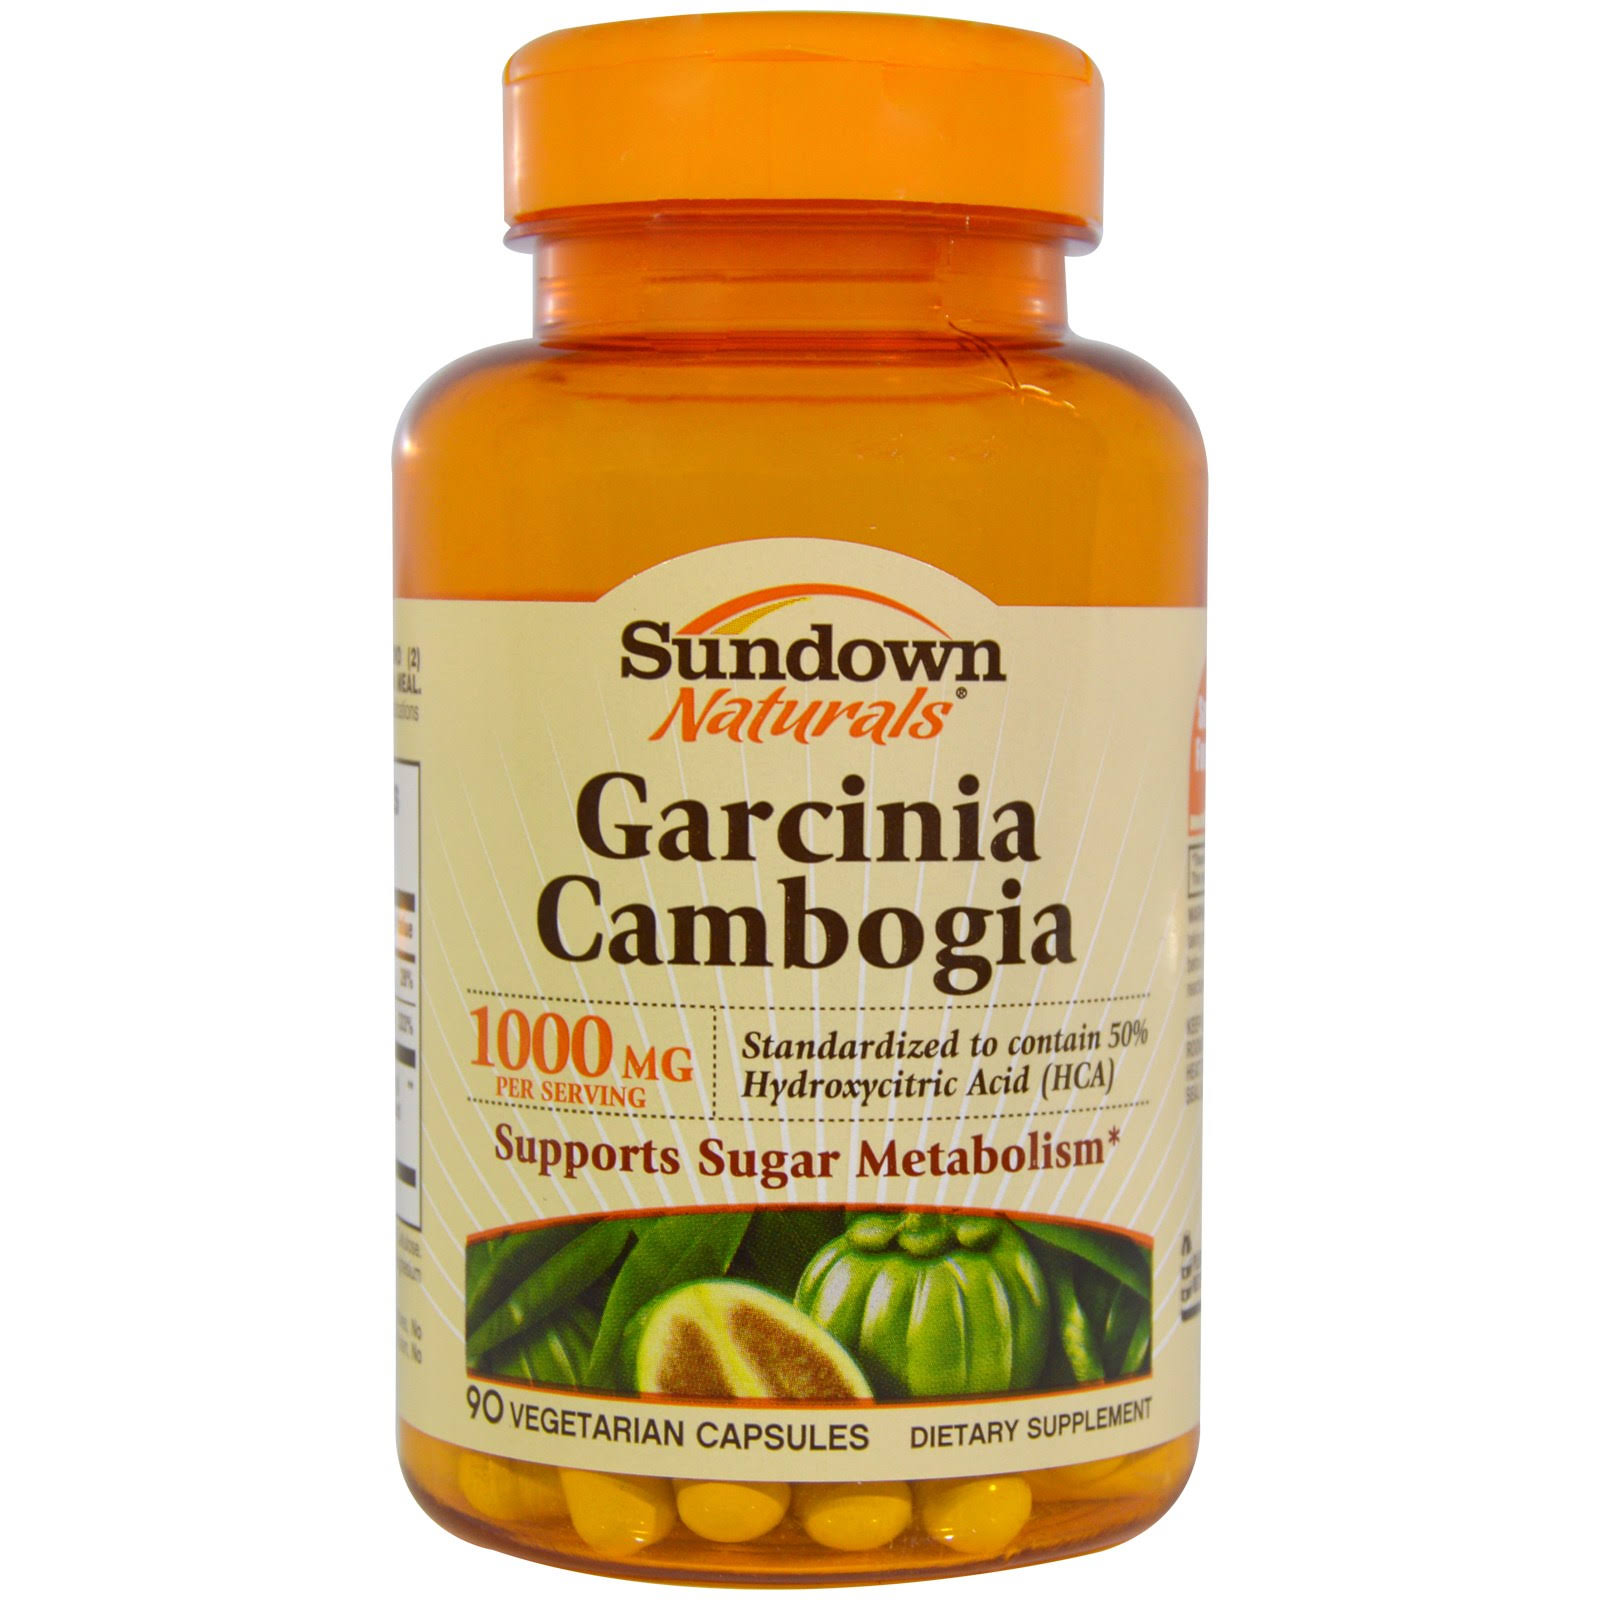 Sundown Naturals Garcinia Cambogia Supplement - 90 Vegetarian Capsules